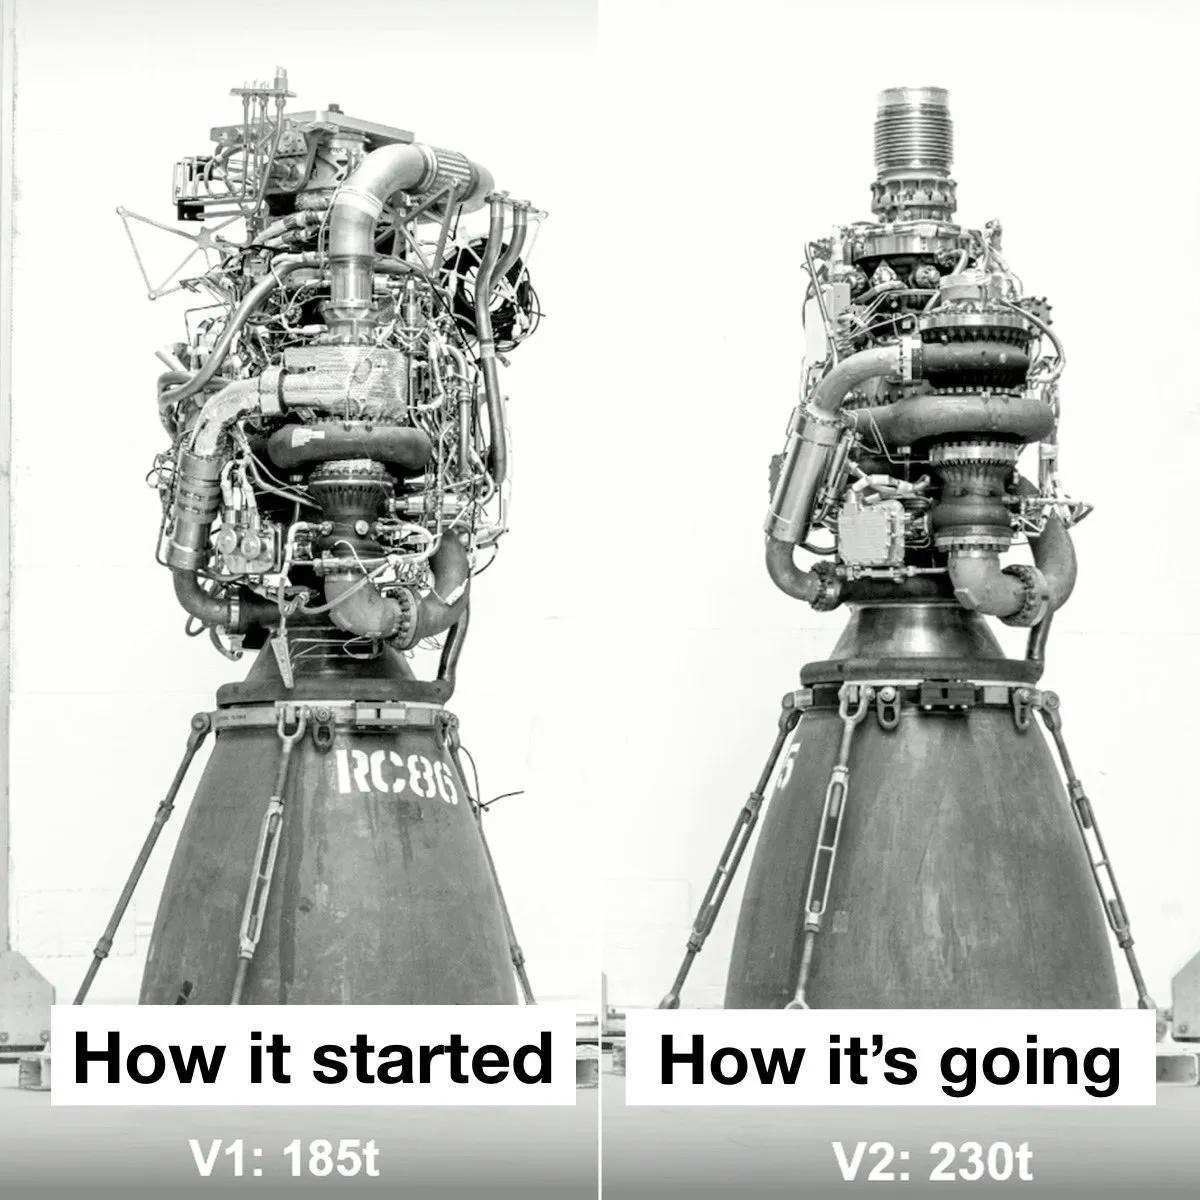 原创失败了马斯克spacex最新火箭发动机测试现场喷出大量烟云